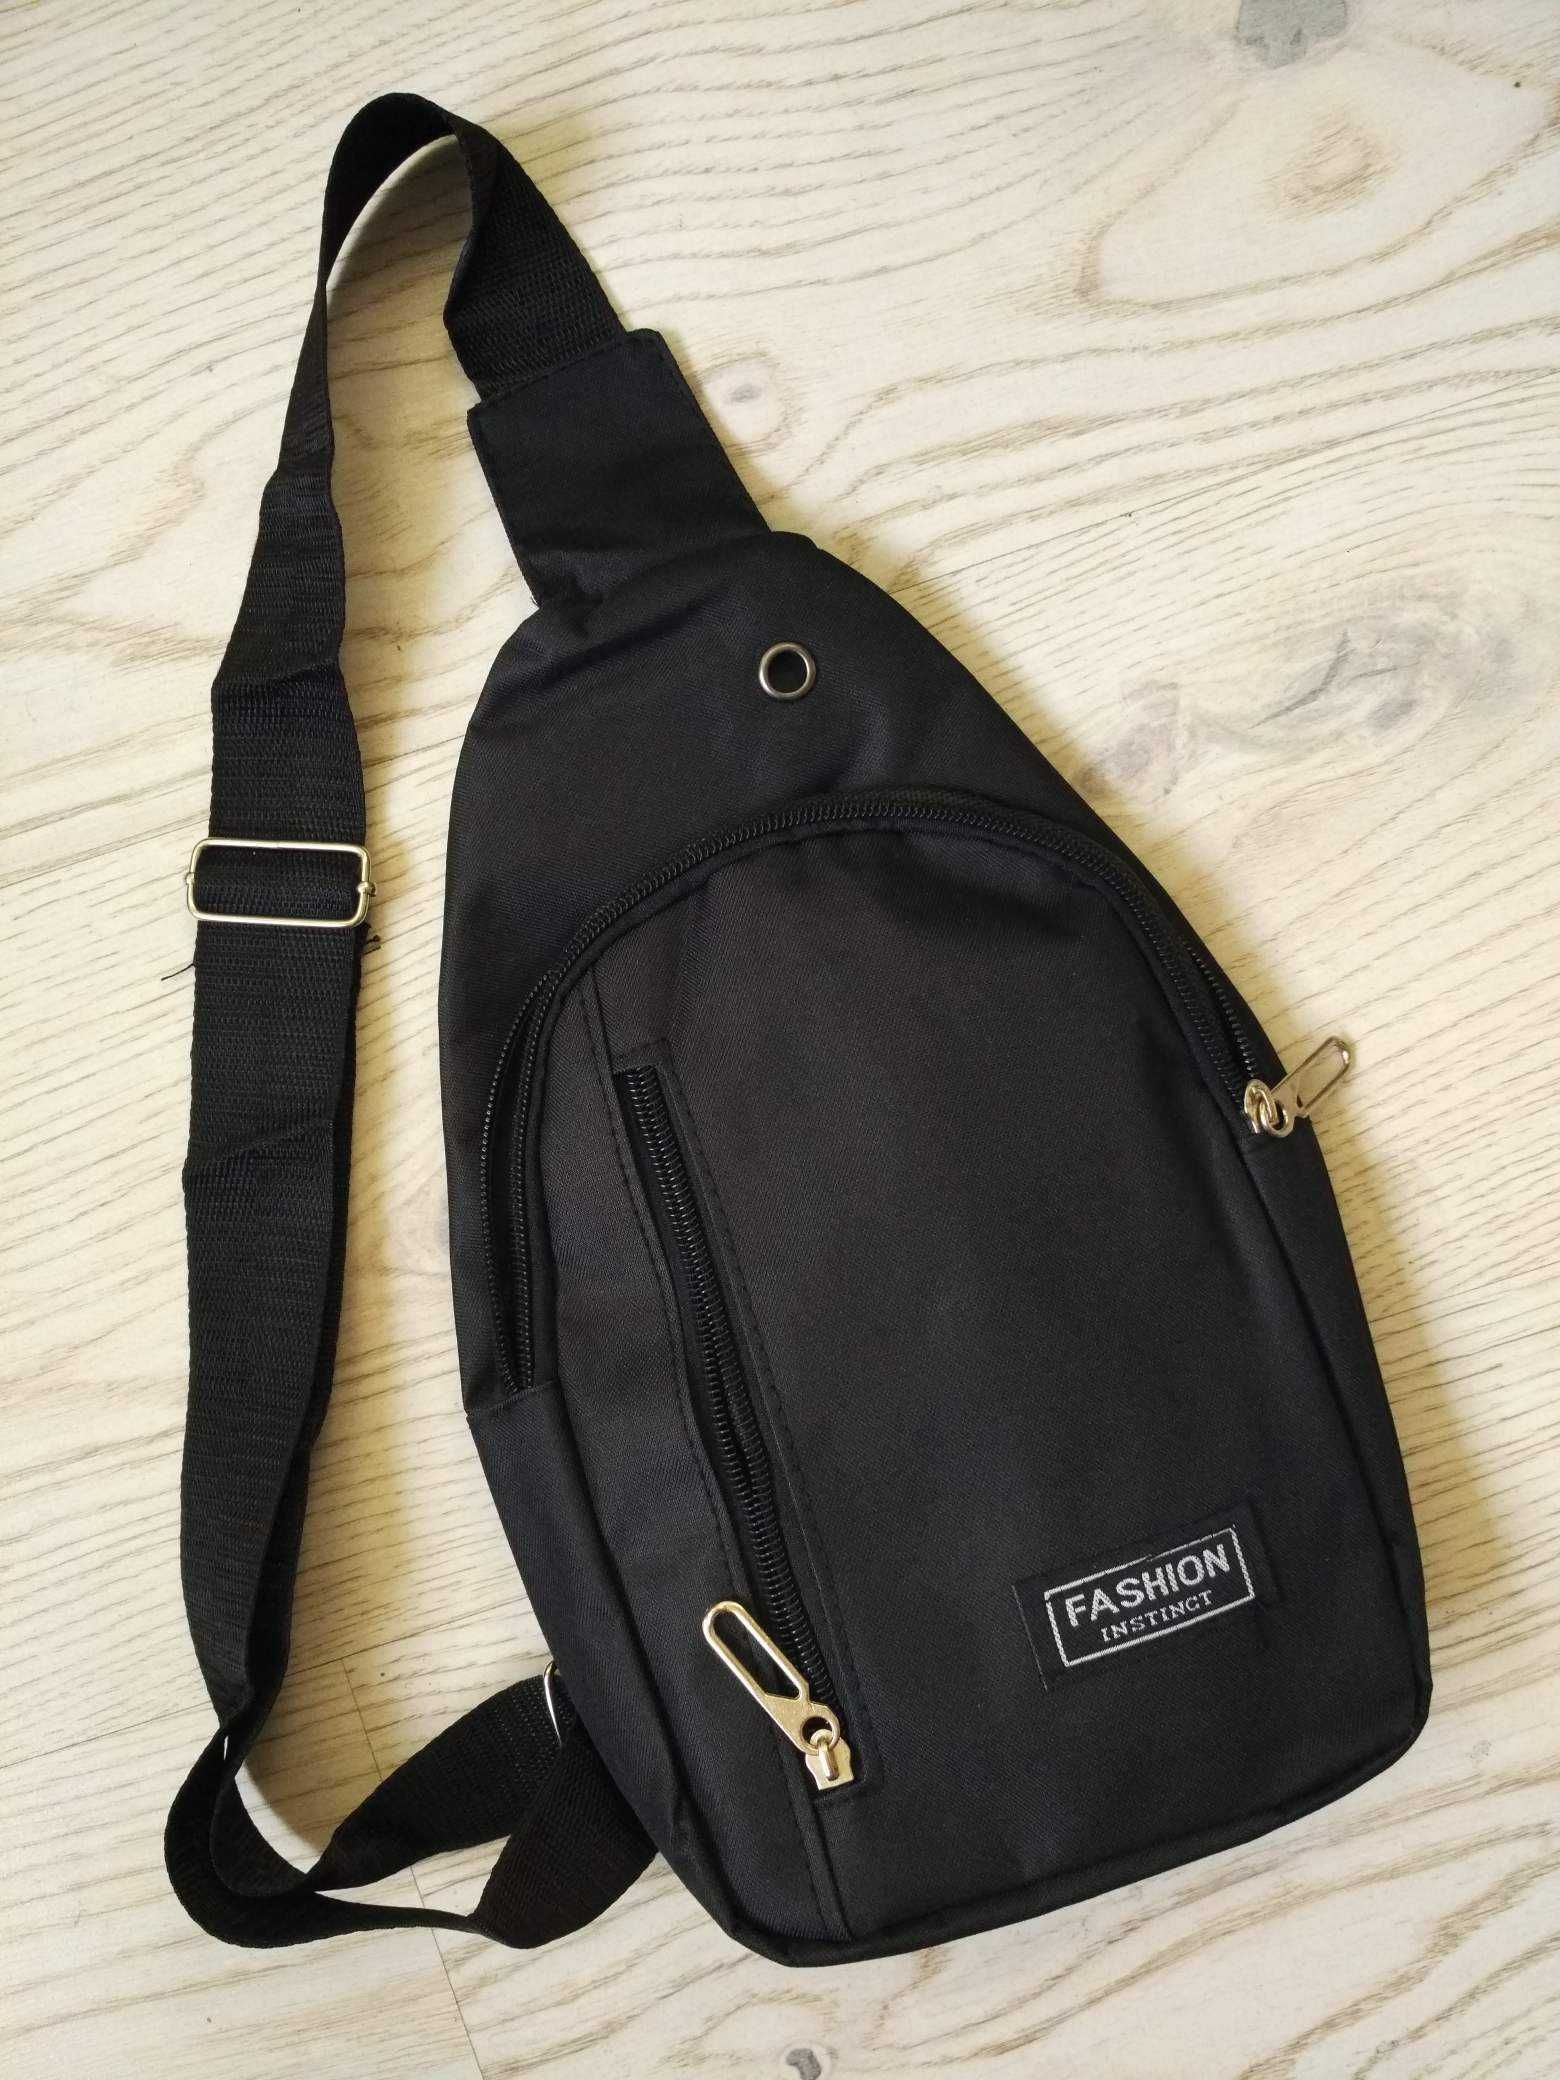 Mini plecak czarny plecaczek na jedno ramie z wyjsciem na sluchawki